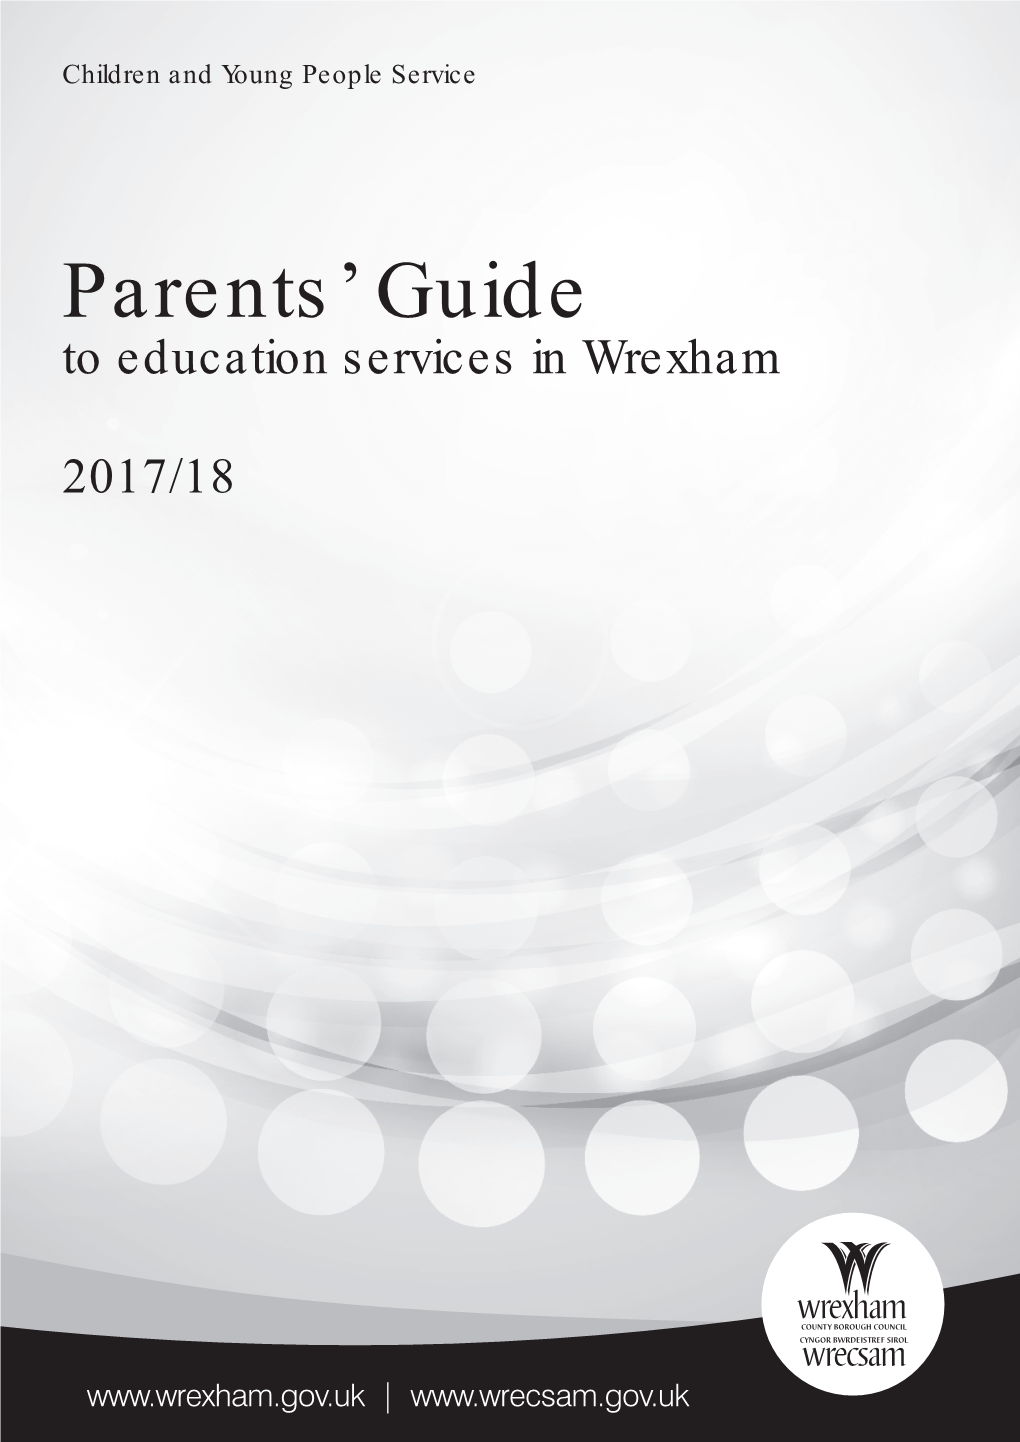 Parents' Guide